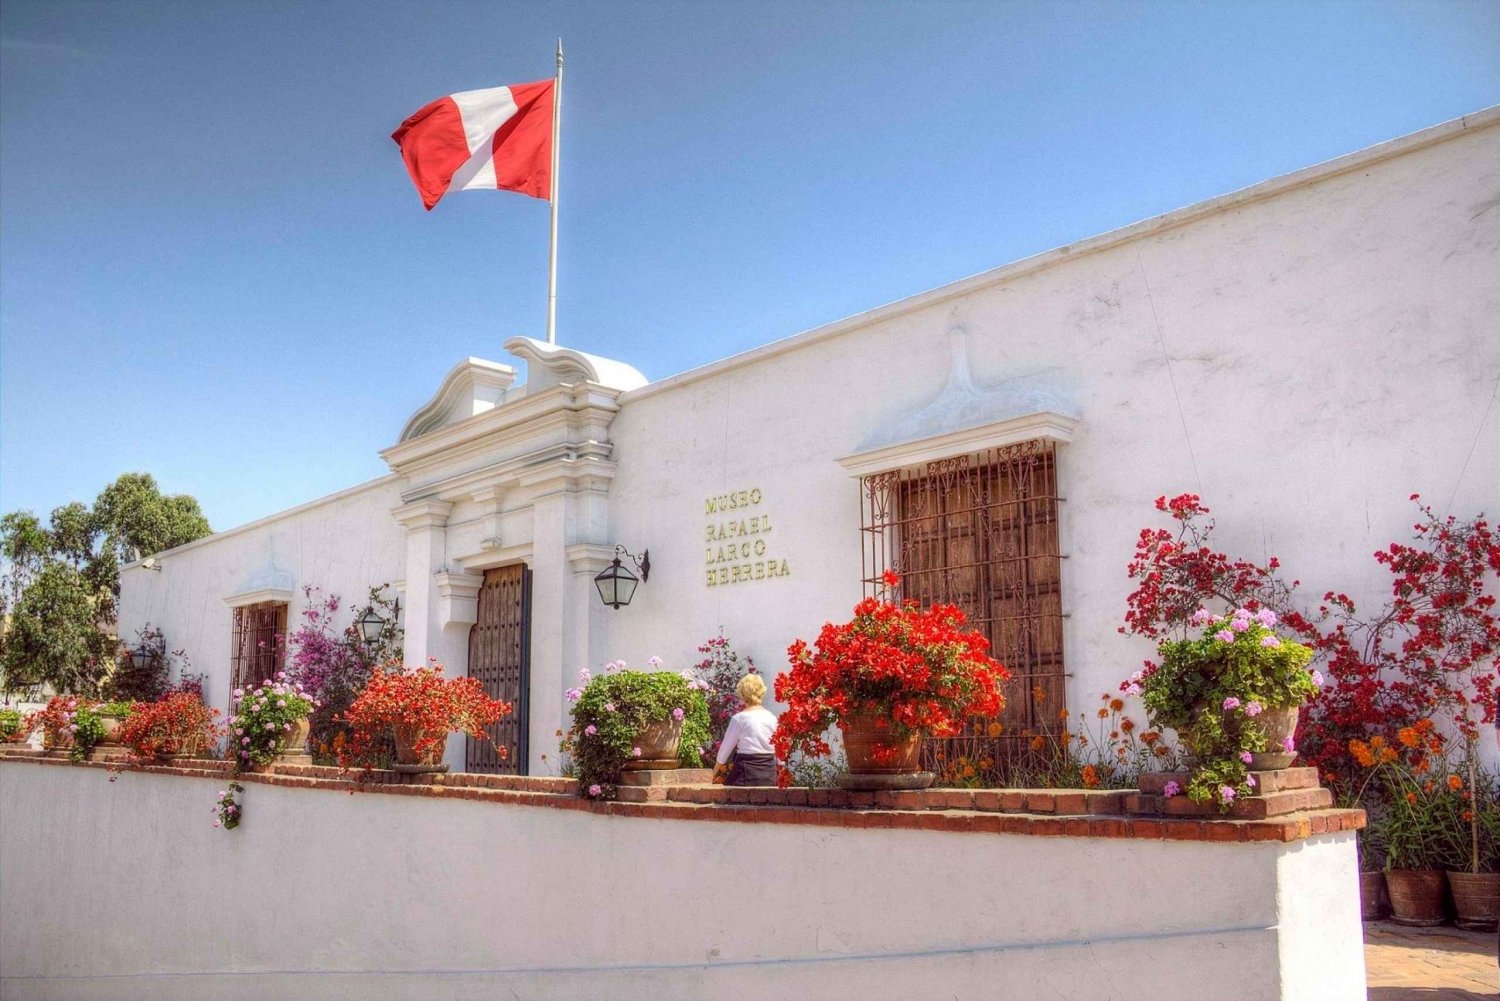 Lima: Halvdagstur till koloniala Lima och Larco-museet